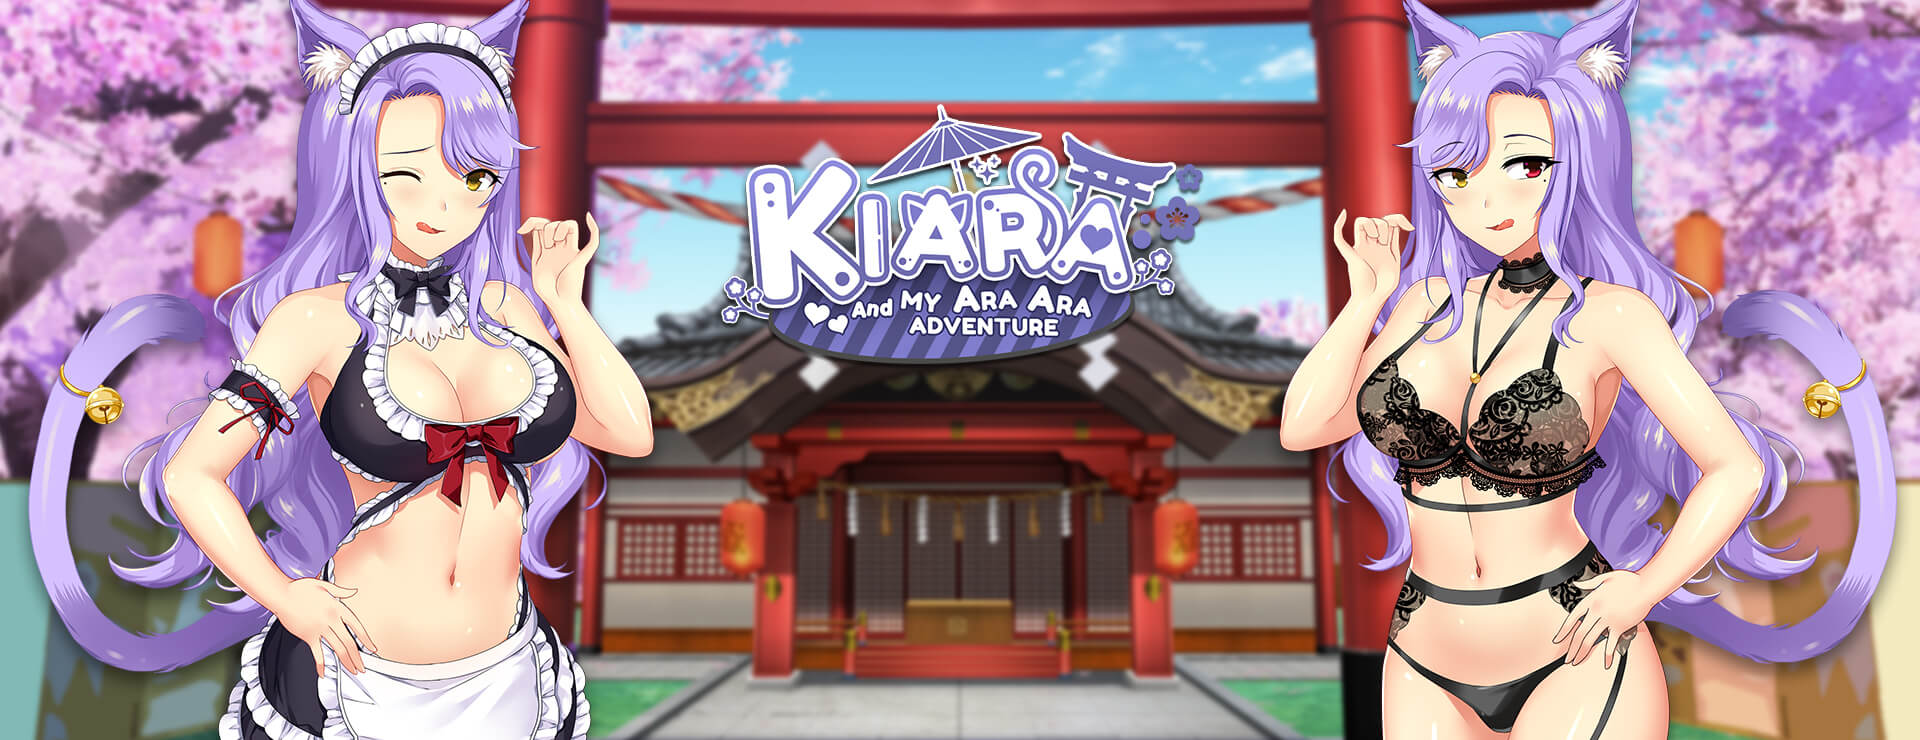 Kiara and my Ara Ara Adventure - ビジュアルノベル ゲーム